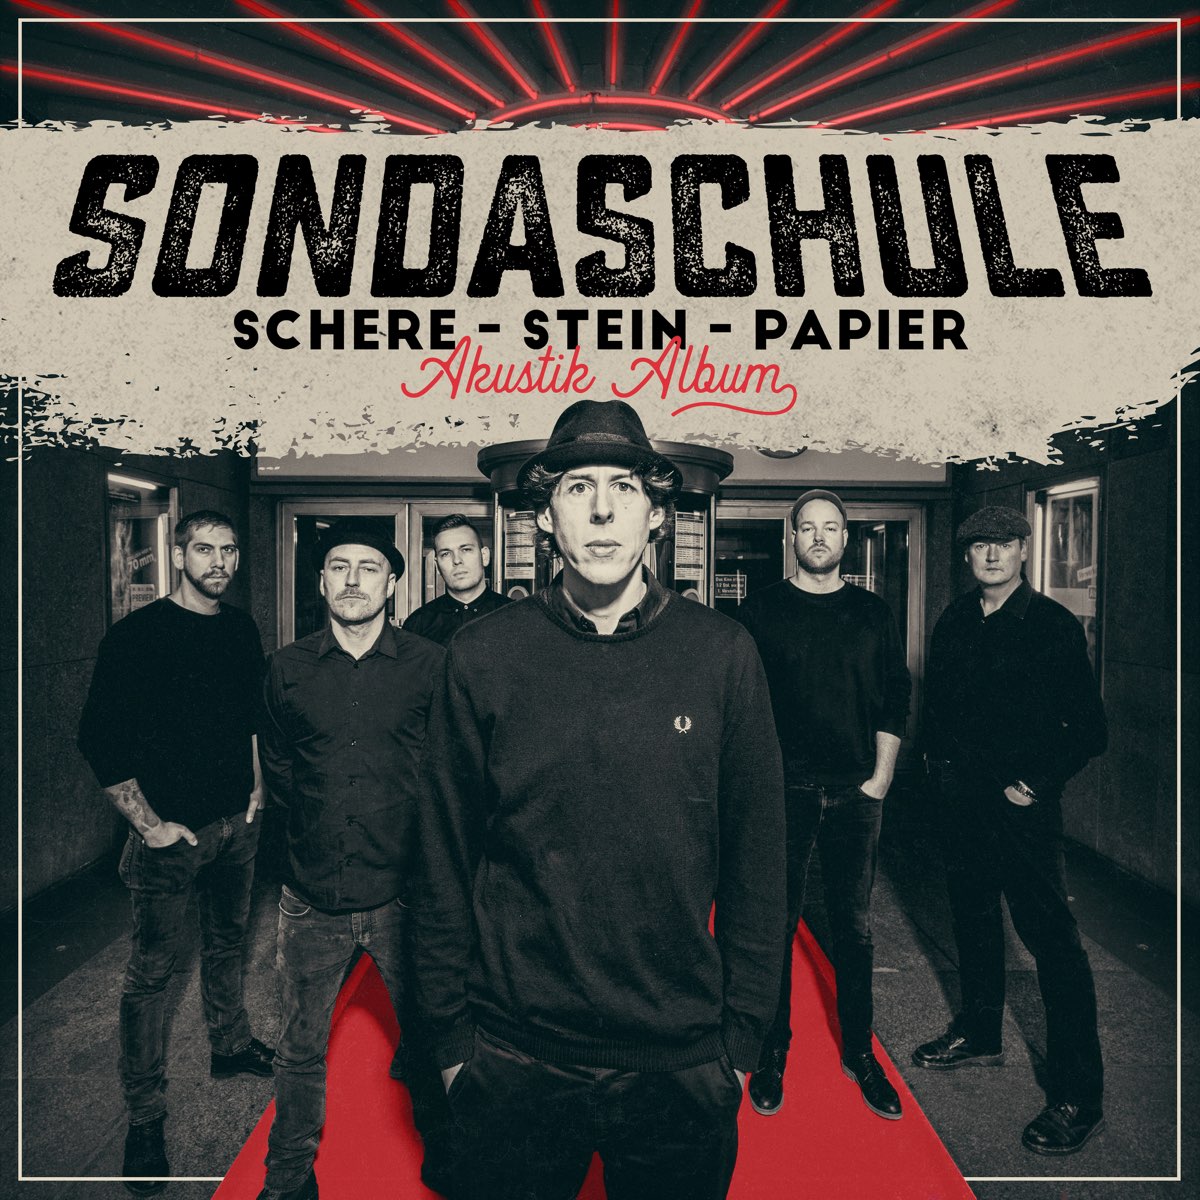 Schere, Stein, Papier (Akustik Album) by Sondaschule on Apple Music